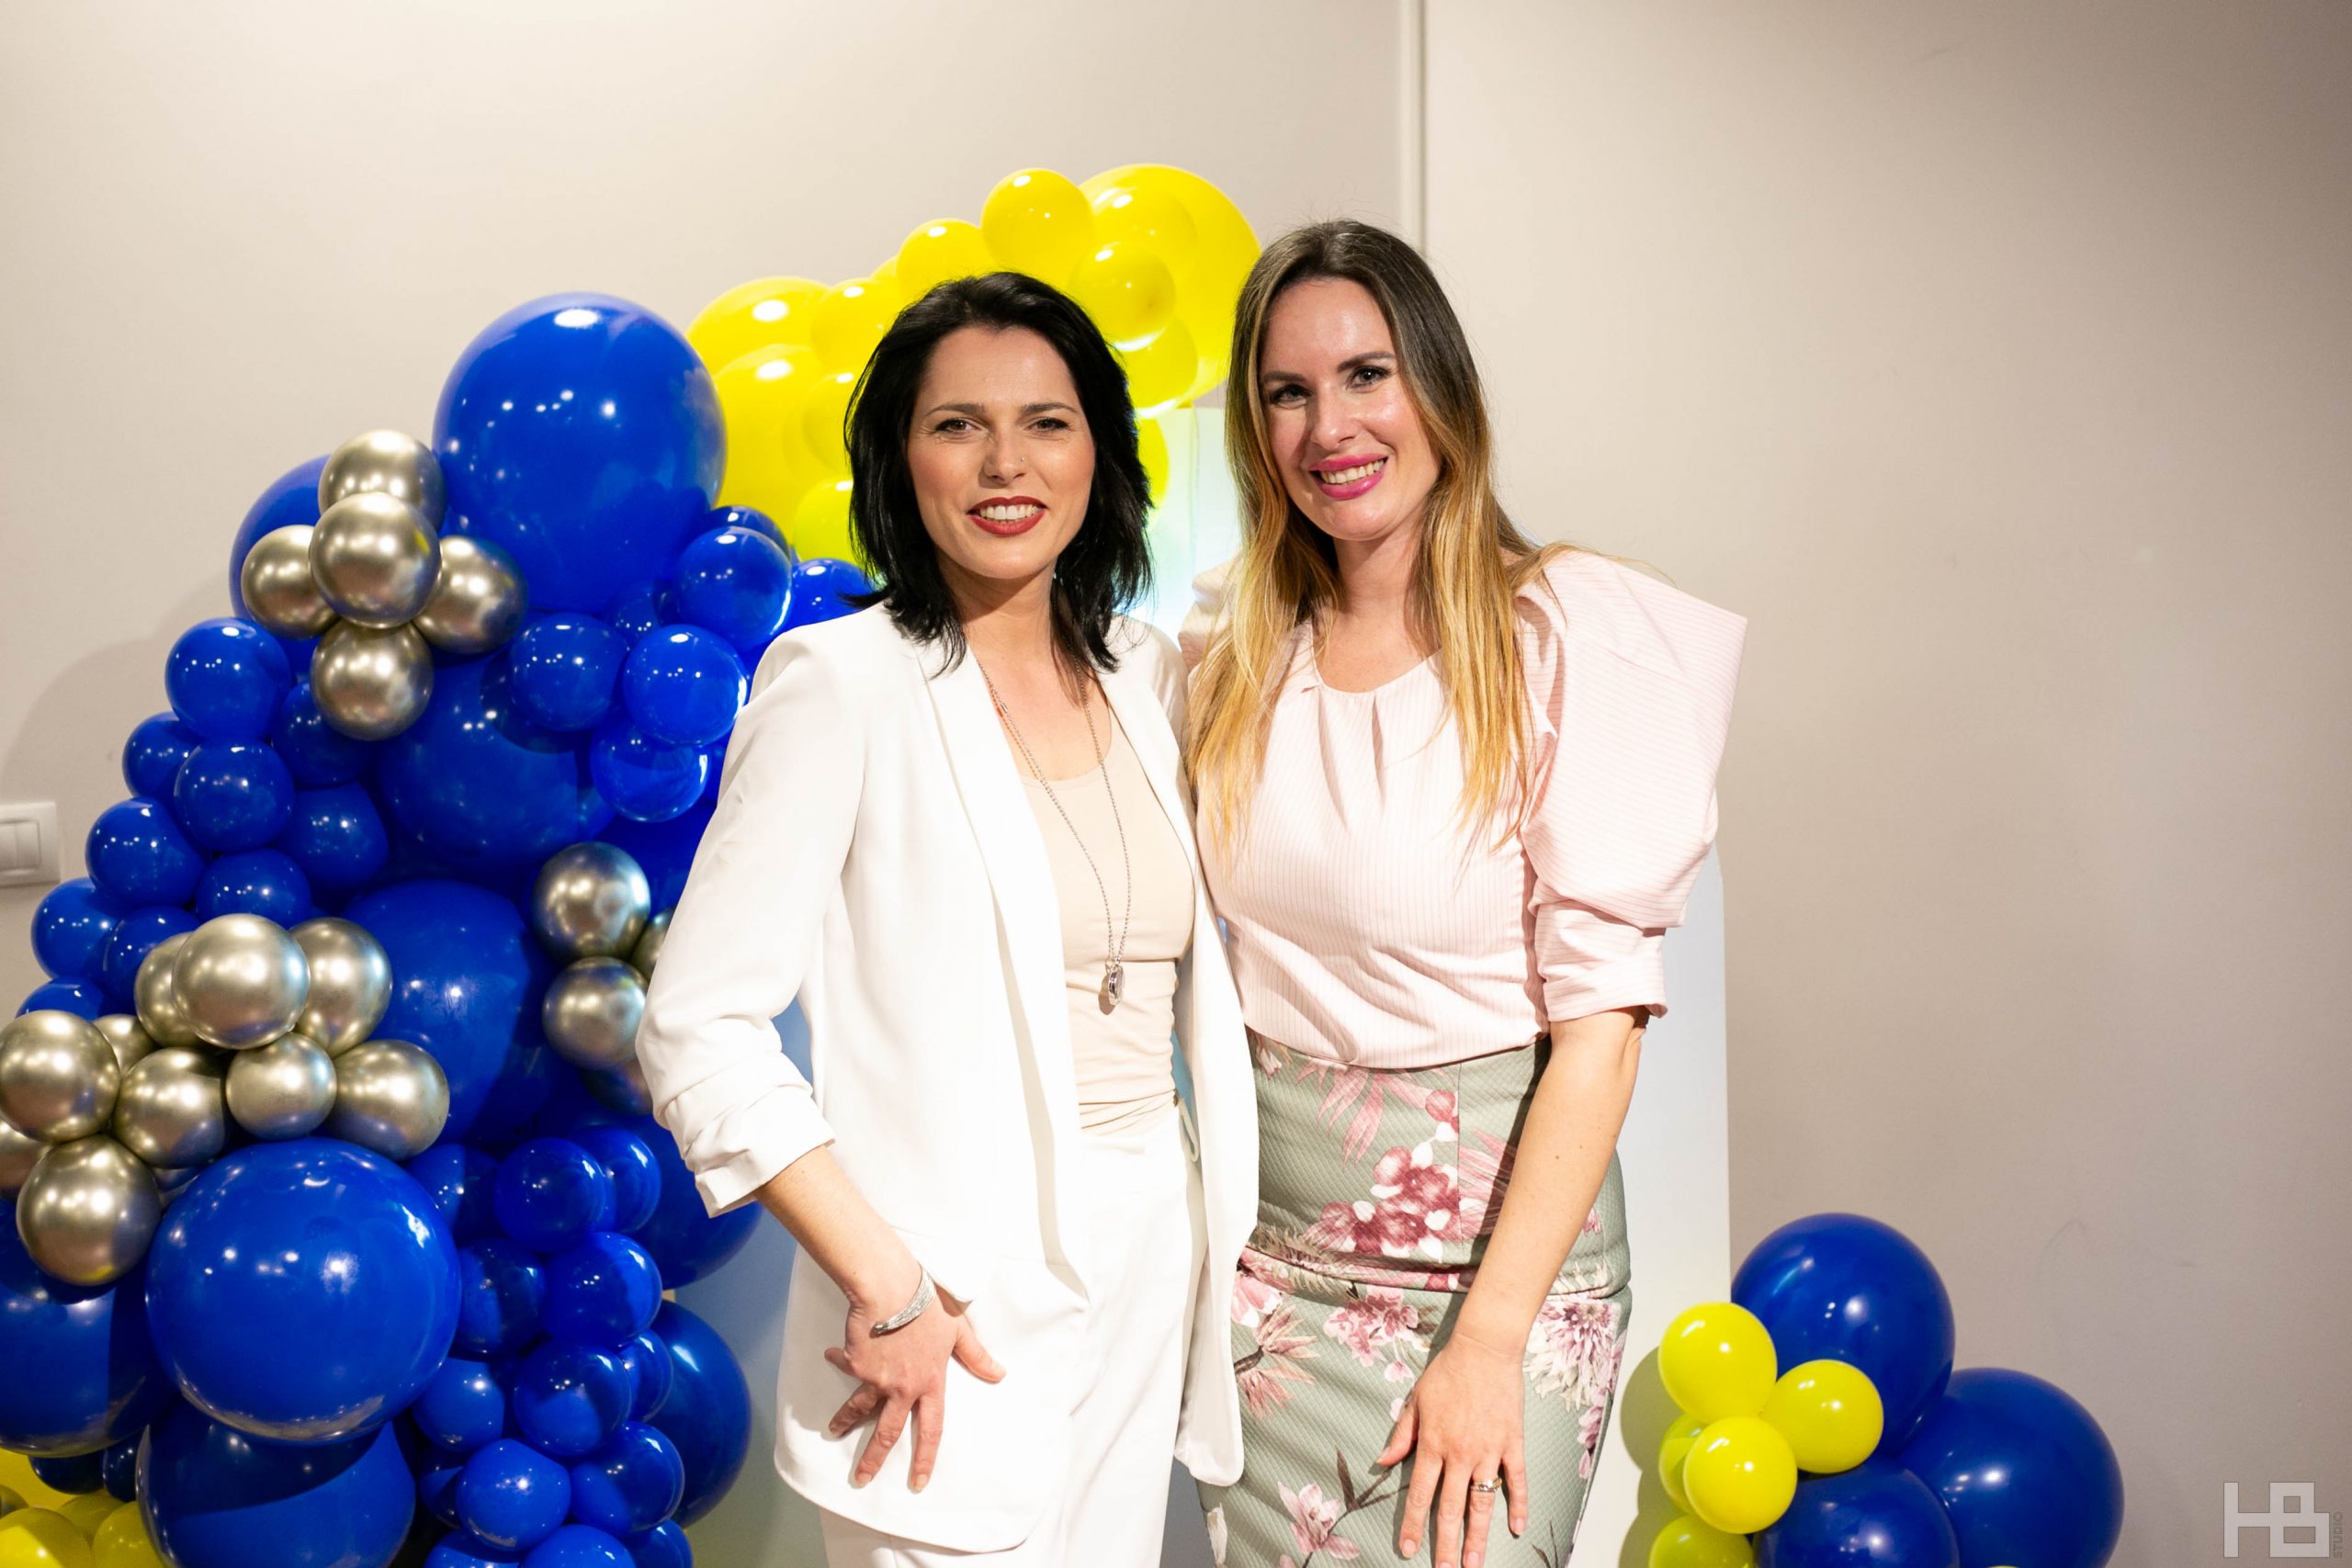 Platforma Moj profil riječke poduzetnice Milene Marot proslavila prvu godinu uspješnog rada!